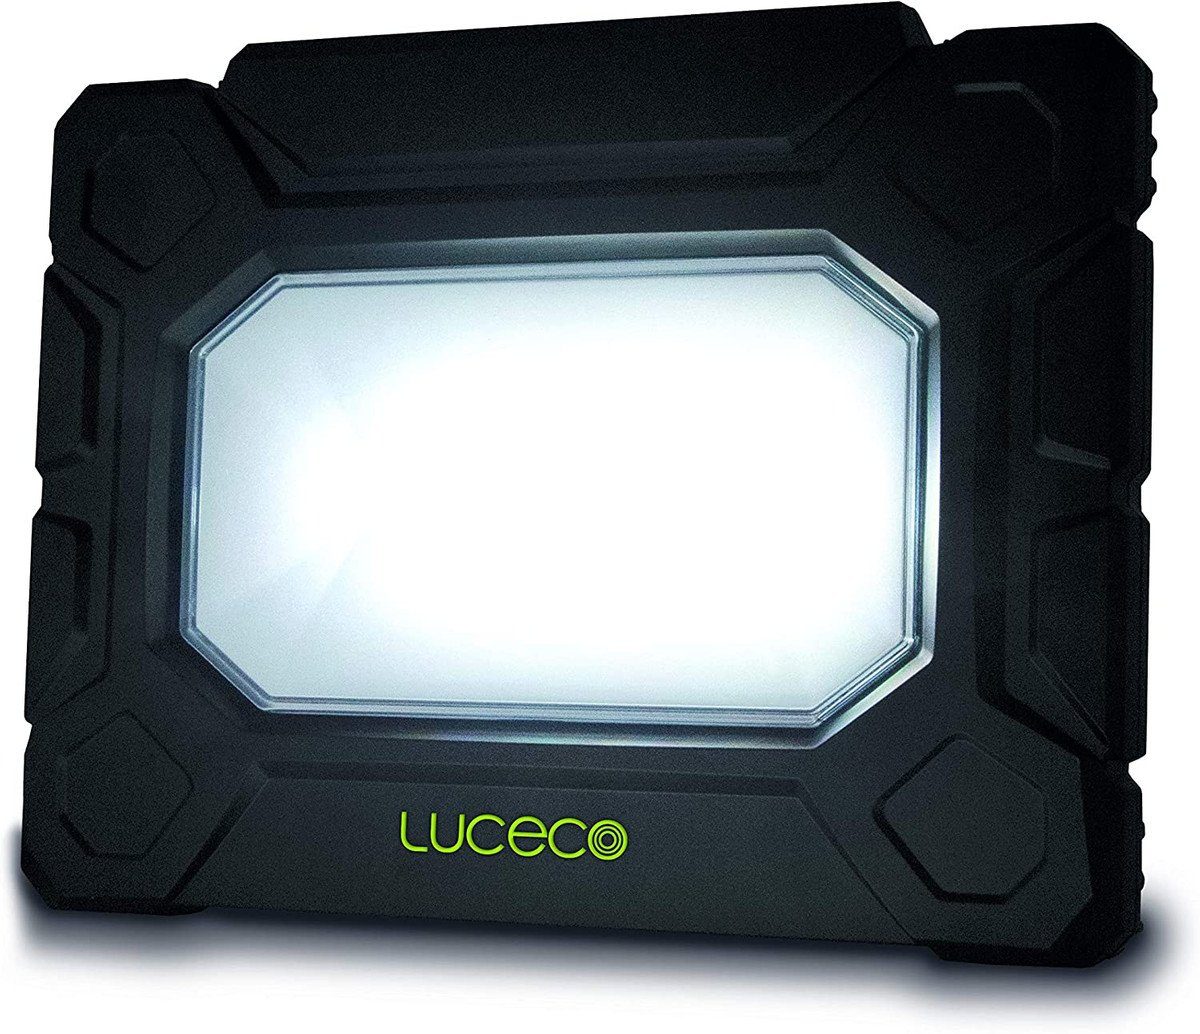 LUCECO Arbeitslicht Luceco Hybrid Lumen 2 Steckdosen Anschlusskabel 5200 5m Arbeitsleuchte